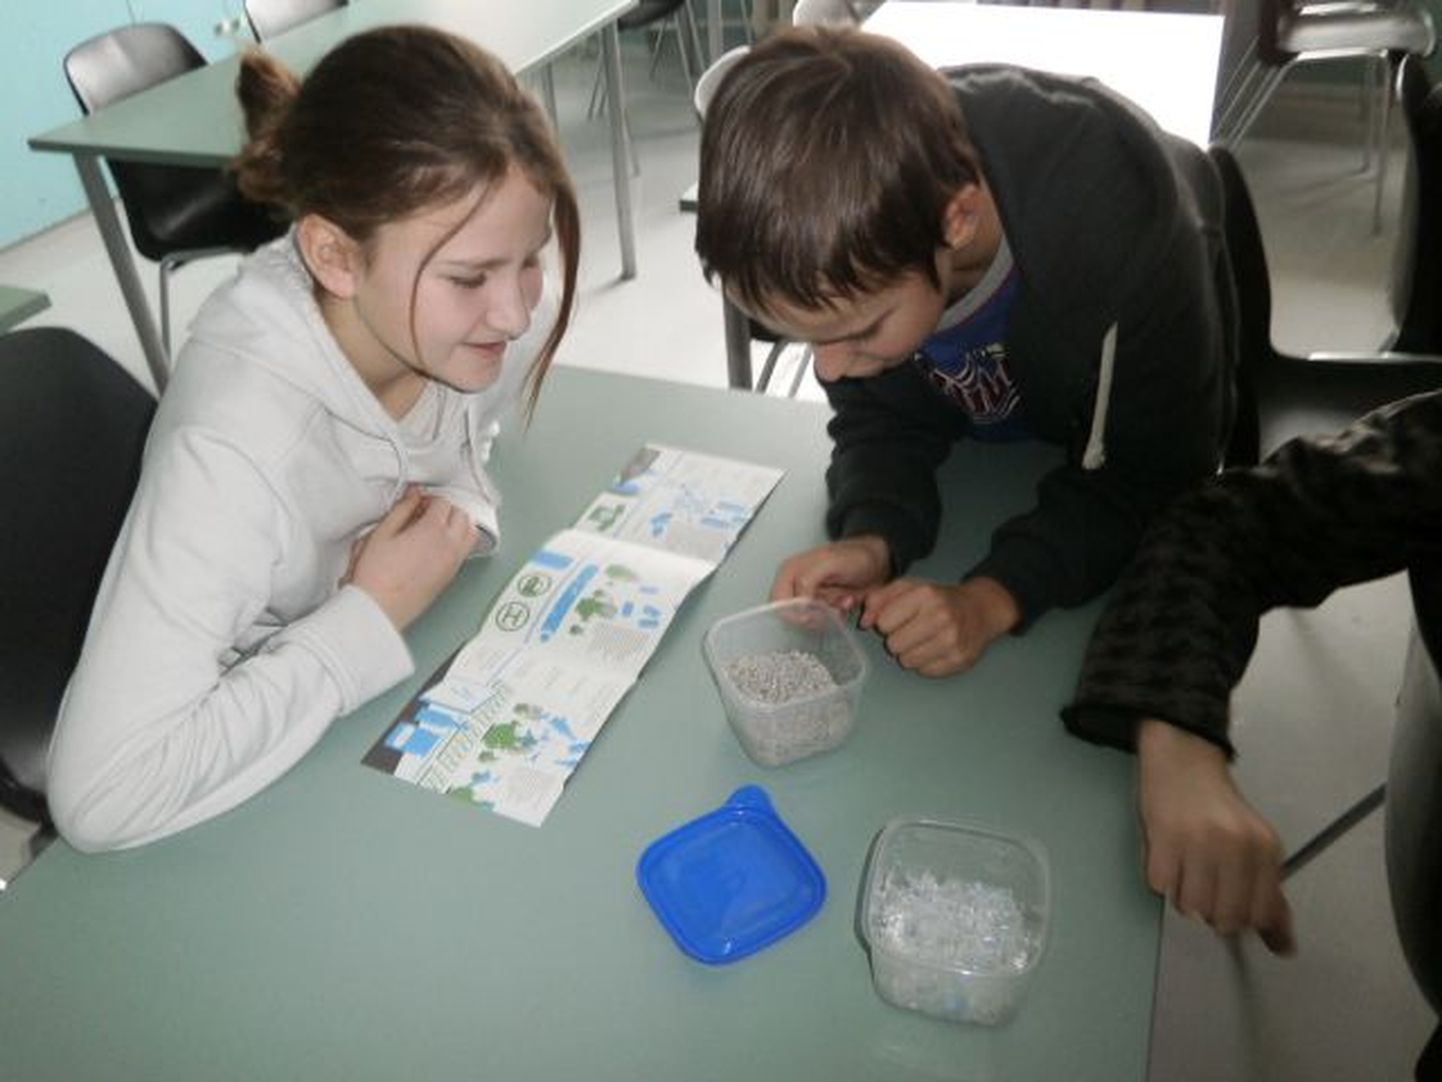 Ala põhikooli keskkonnatunnis käsitleti põhjalikult kolme pakendi – plastpudeli, plekkpurgi ja klaaspudeli – teekonda. Selleks tuli õpilastel lähemalt uurida plastjäätmeidki.